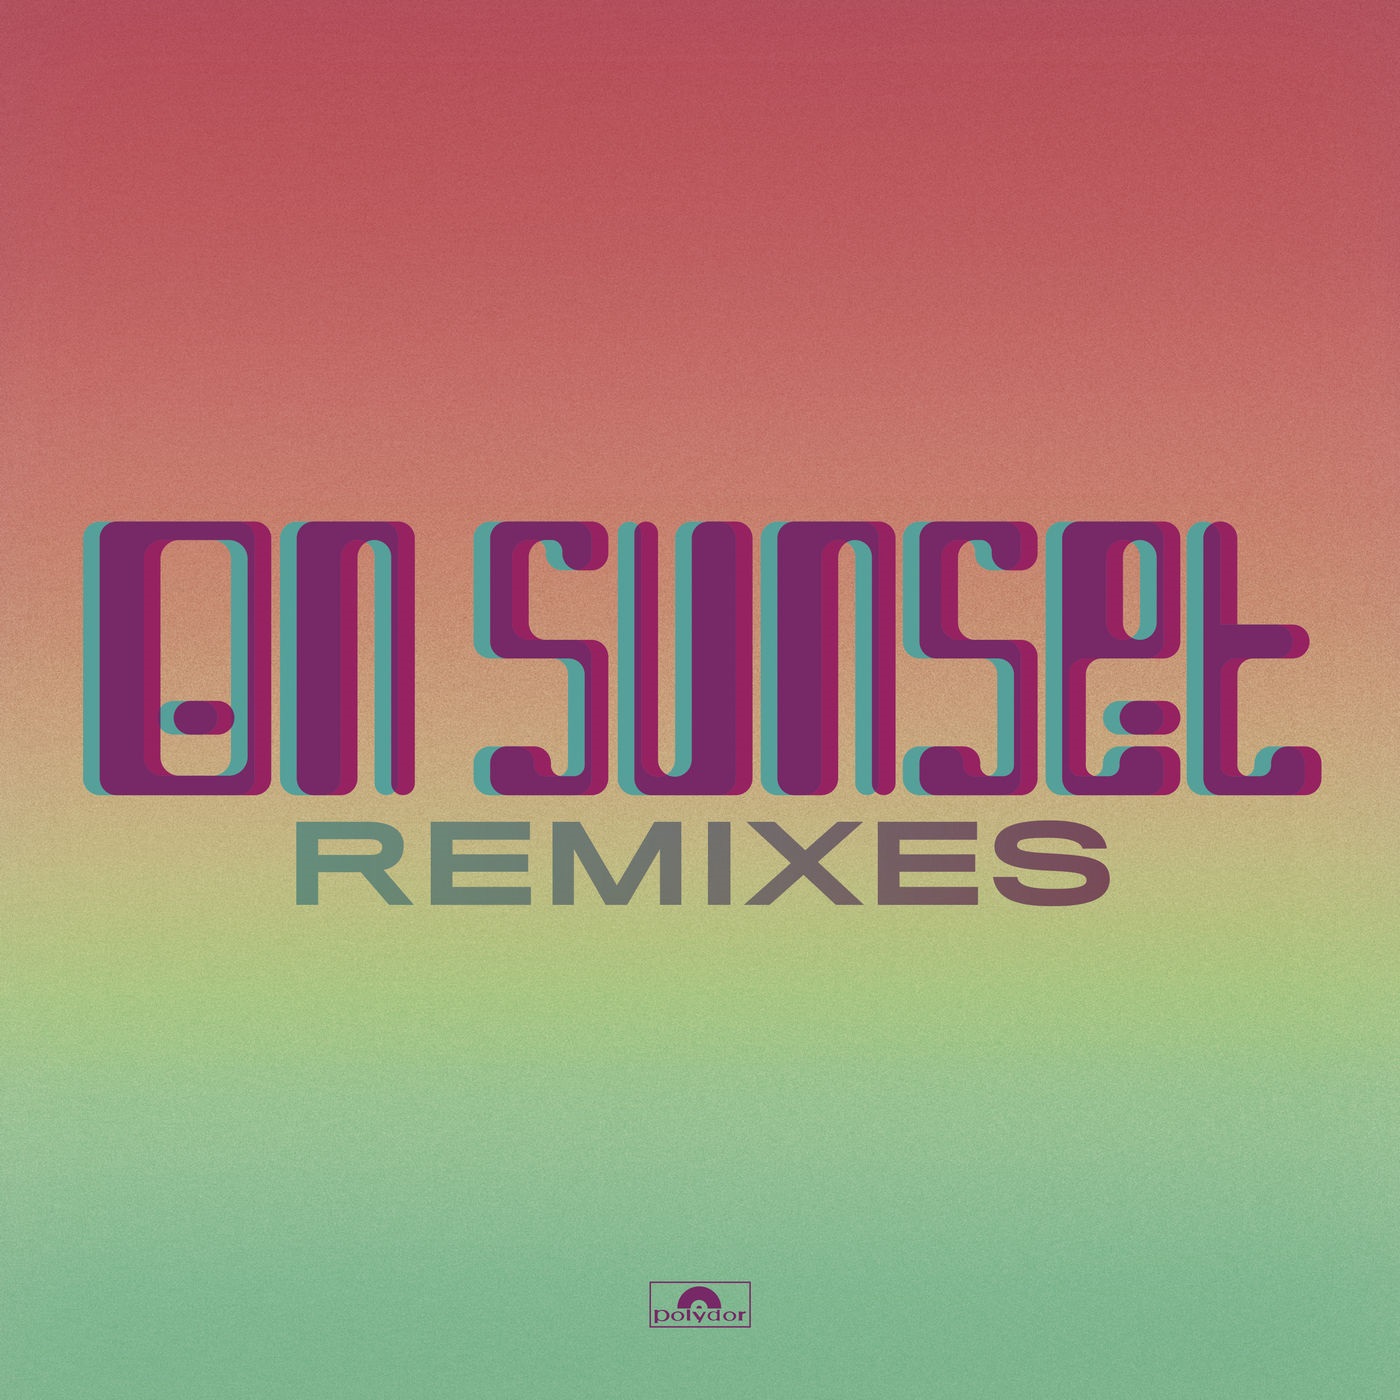 Paul Weller - On Sunset (Remixes) (2020) [FLAC 24bit/44,1kHz]